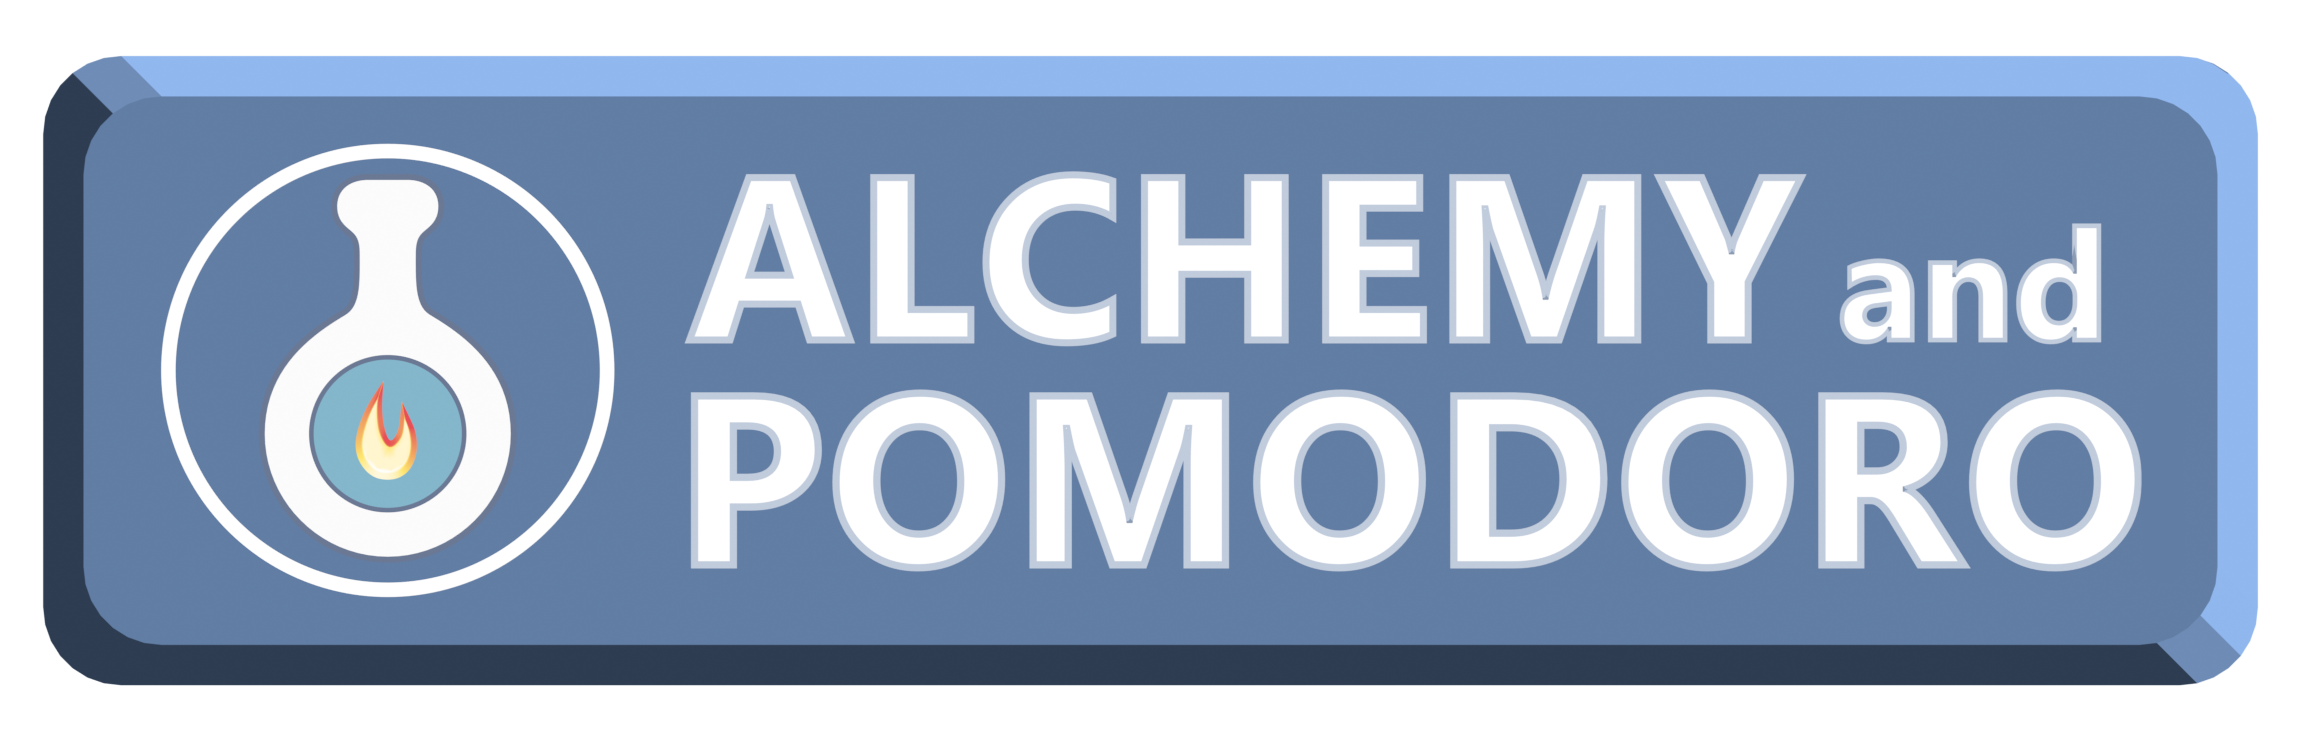 Alchemy and Pomodoro